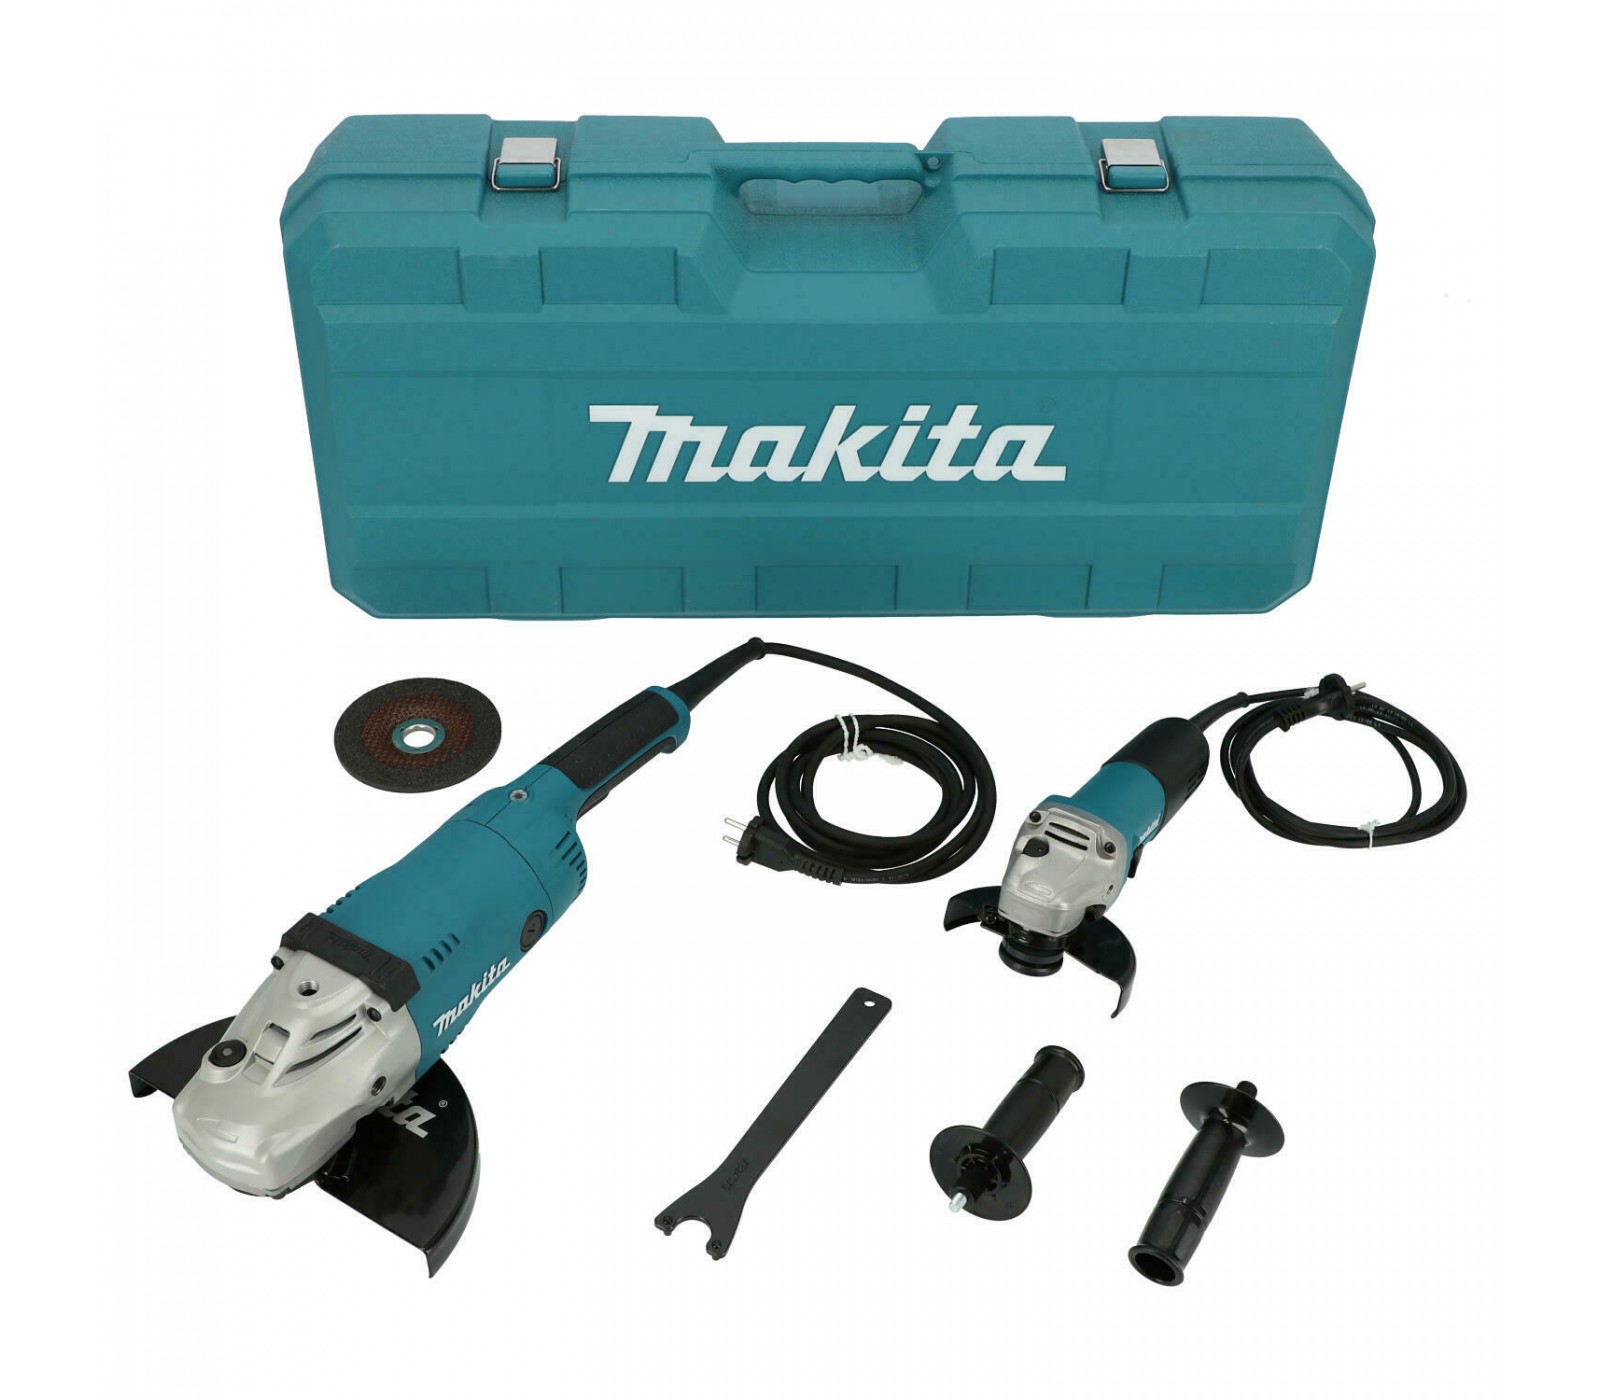 Electric angle grinder MAKITA GA9020R, 230 mm, 2200 W and MAKITA